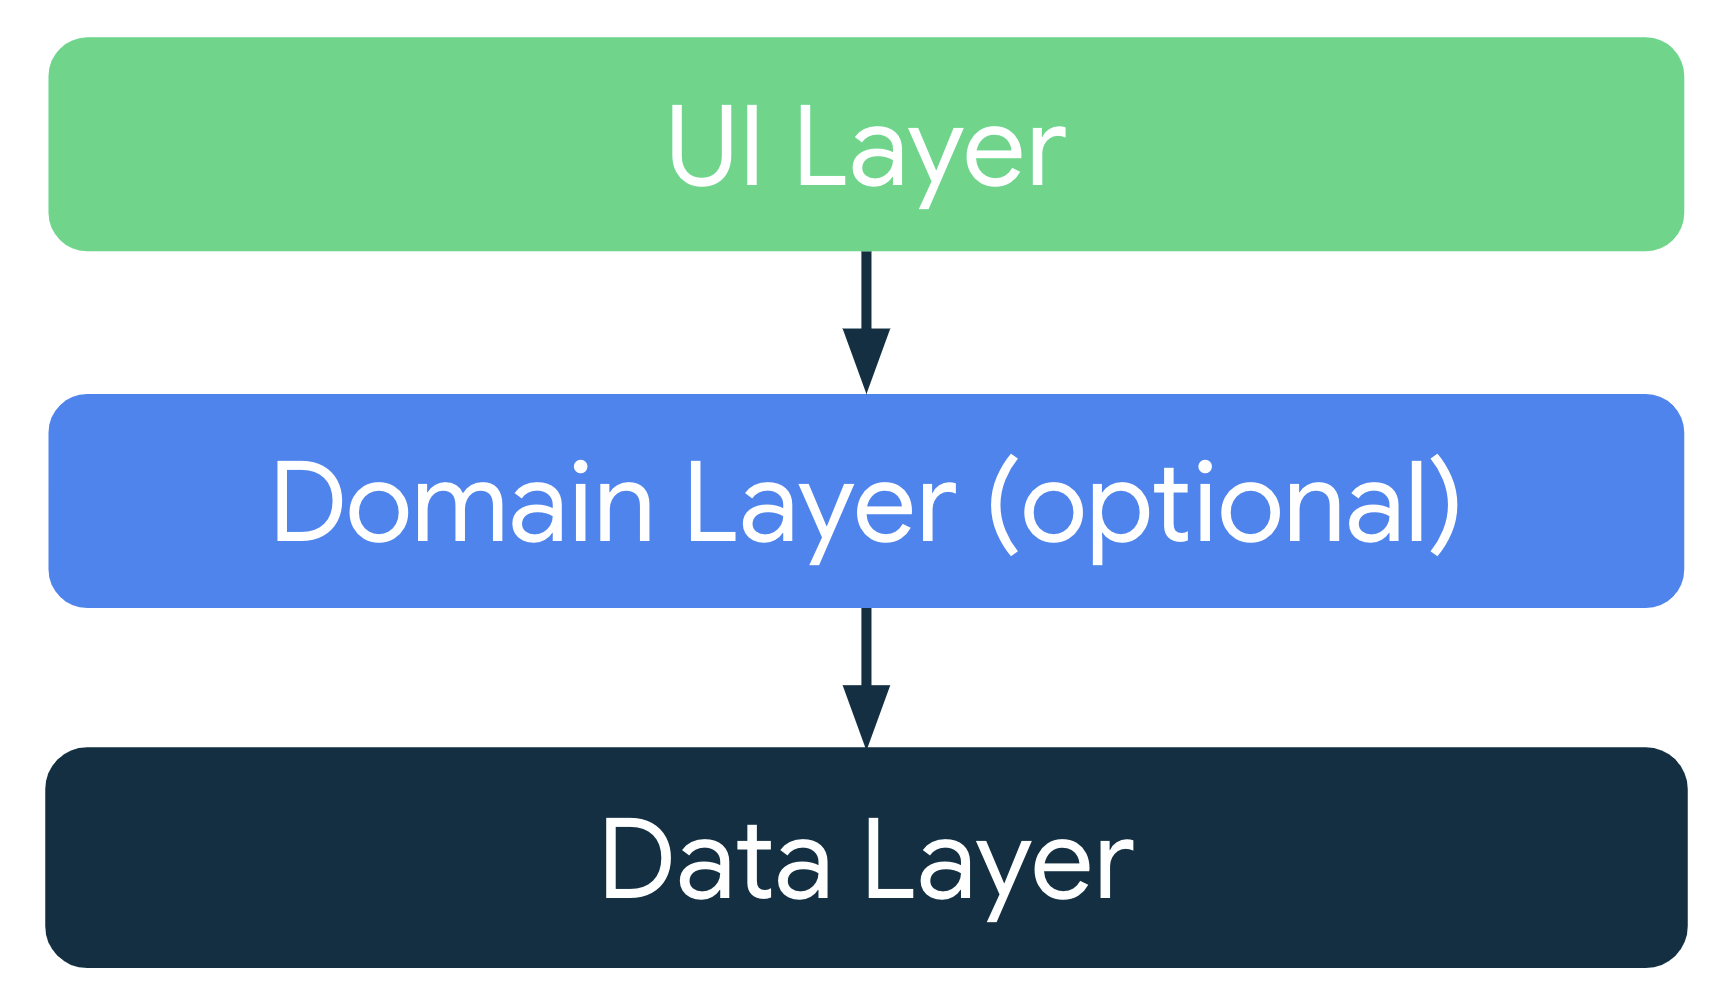 在典型的应用架构中，界面层会从数据层或可选网域层（位于界面层和数据层之间）获取应用数据。